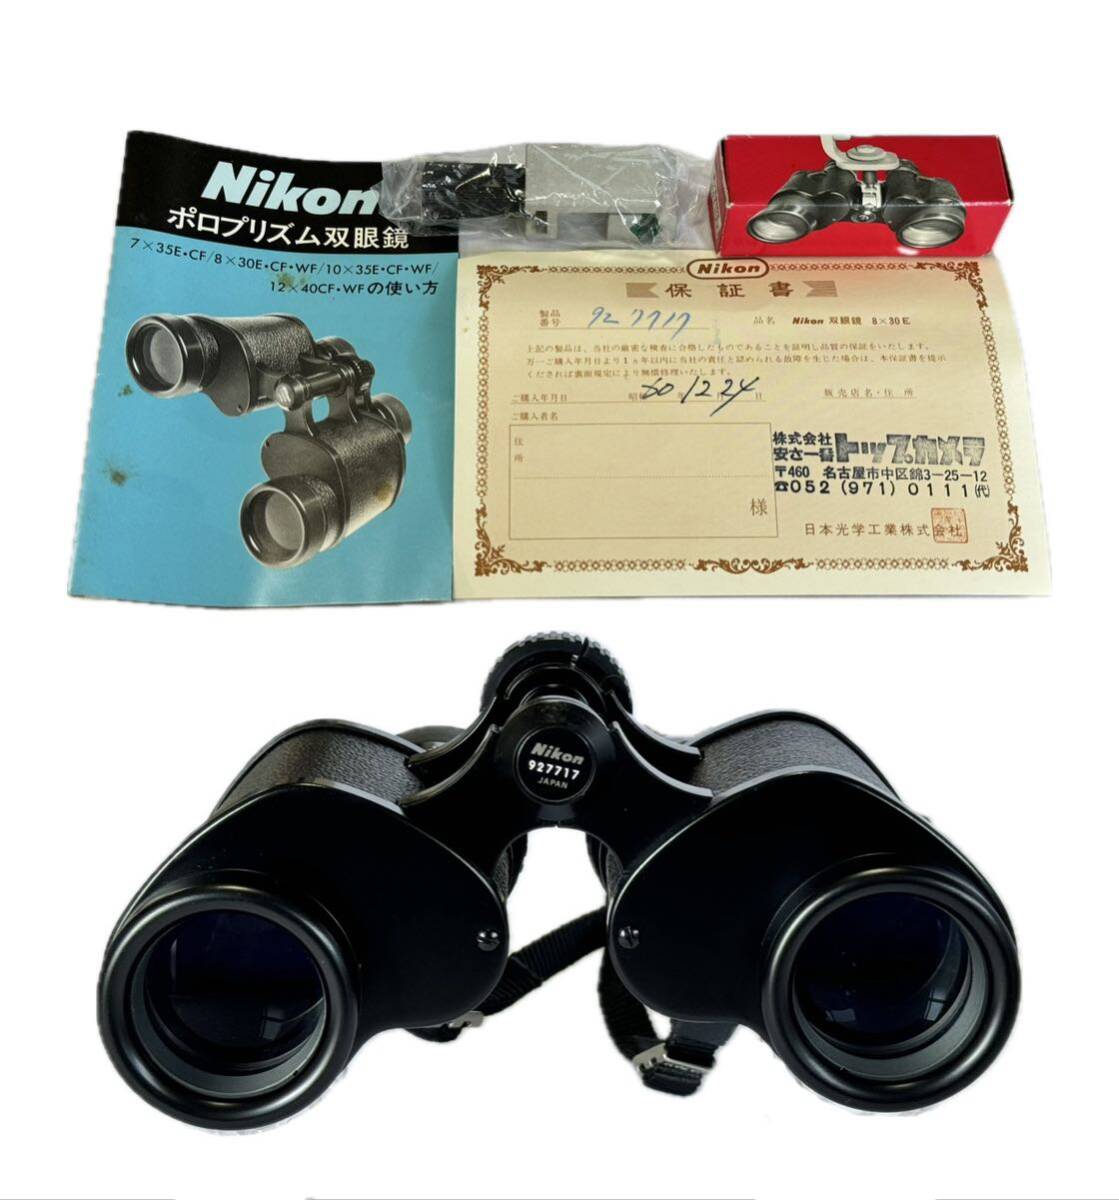 AZ-771 Nikon 双眼鏡 Binoculars 8×30E 8.3°WF ソフトケース 箱 取説 デッド ジャンク 現状 美品 ニコン 日本製 ポロプリズム の画像7